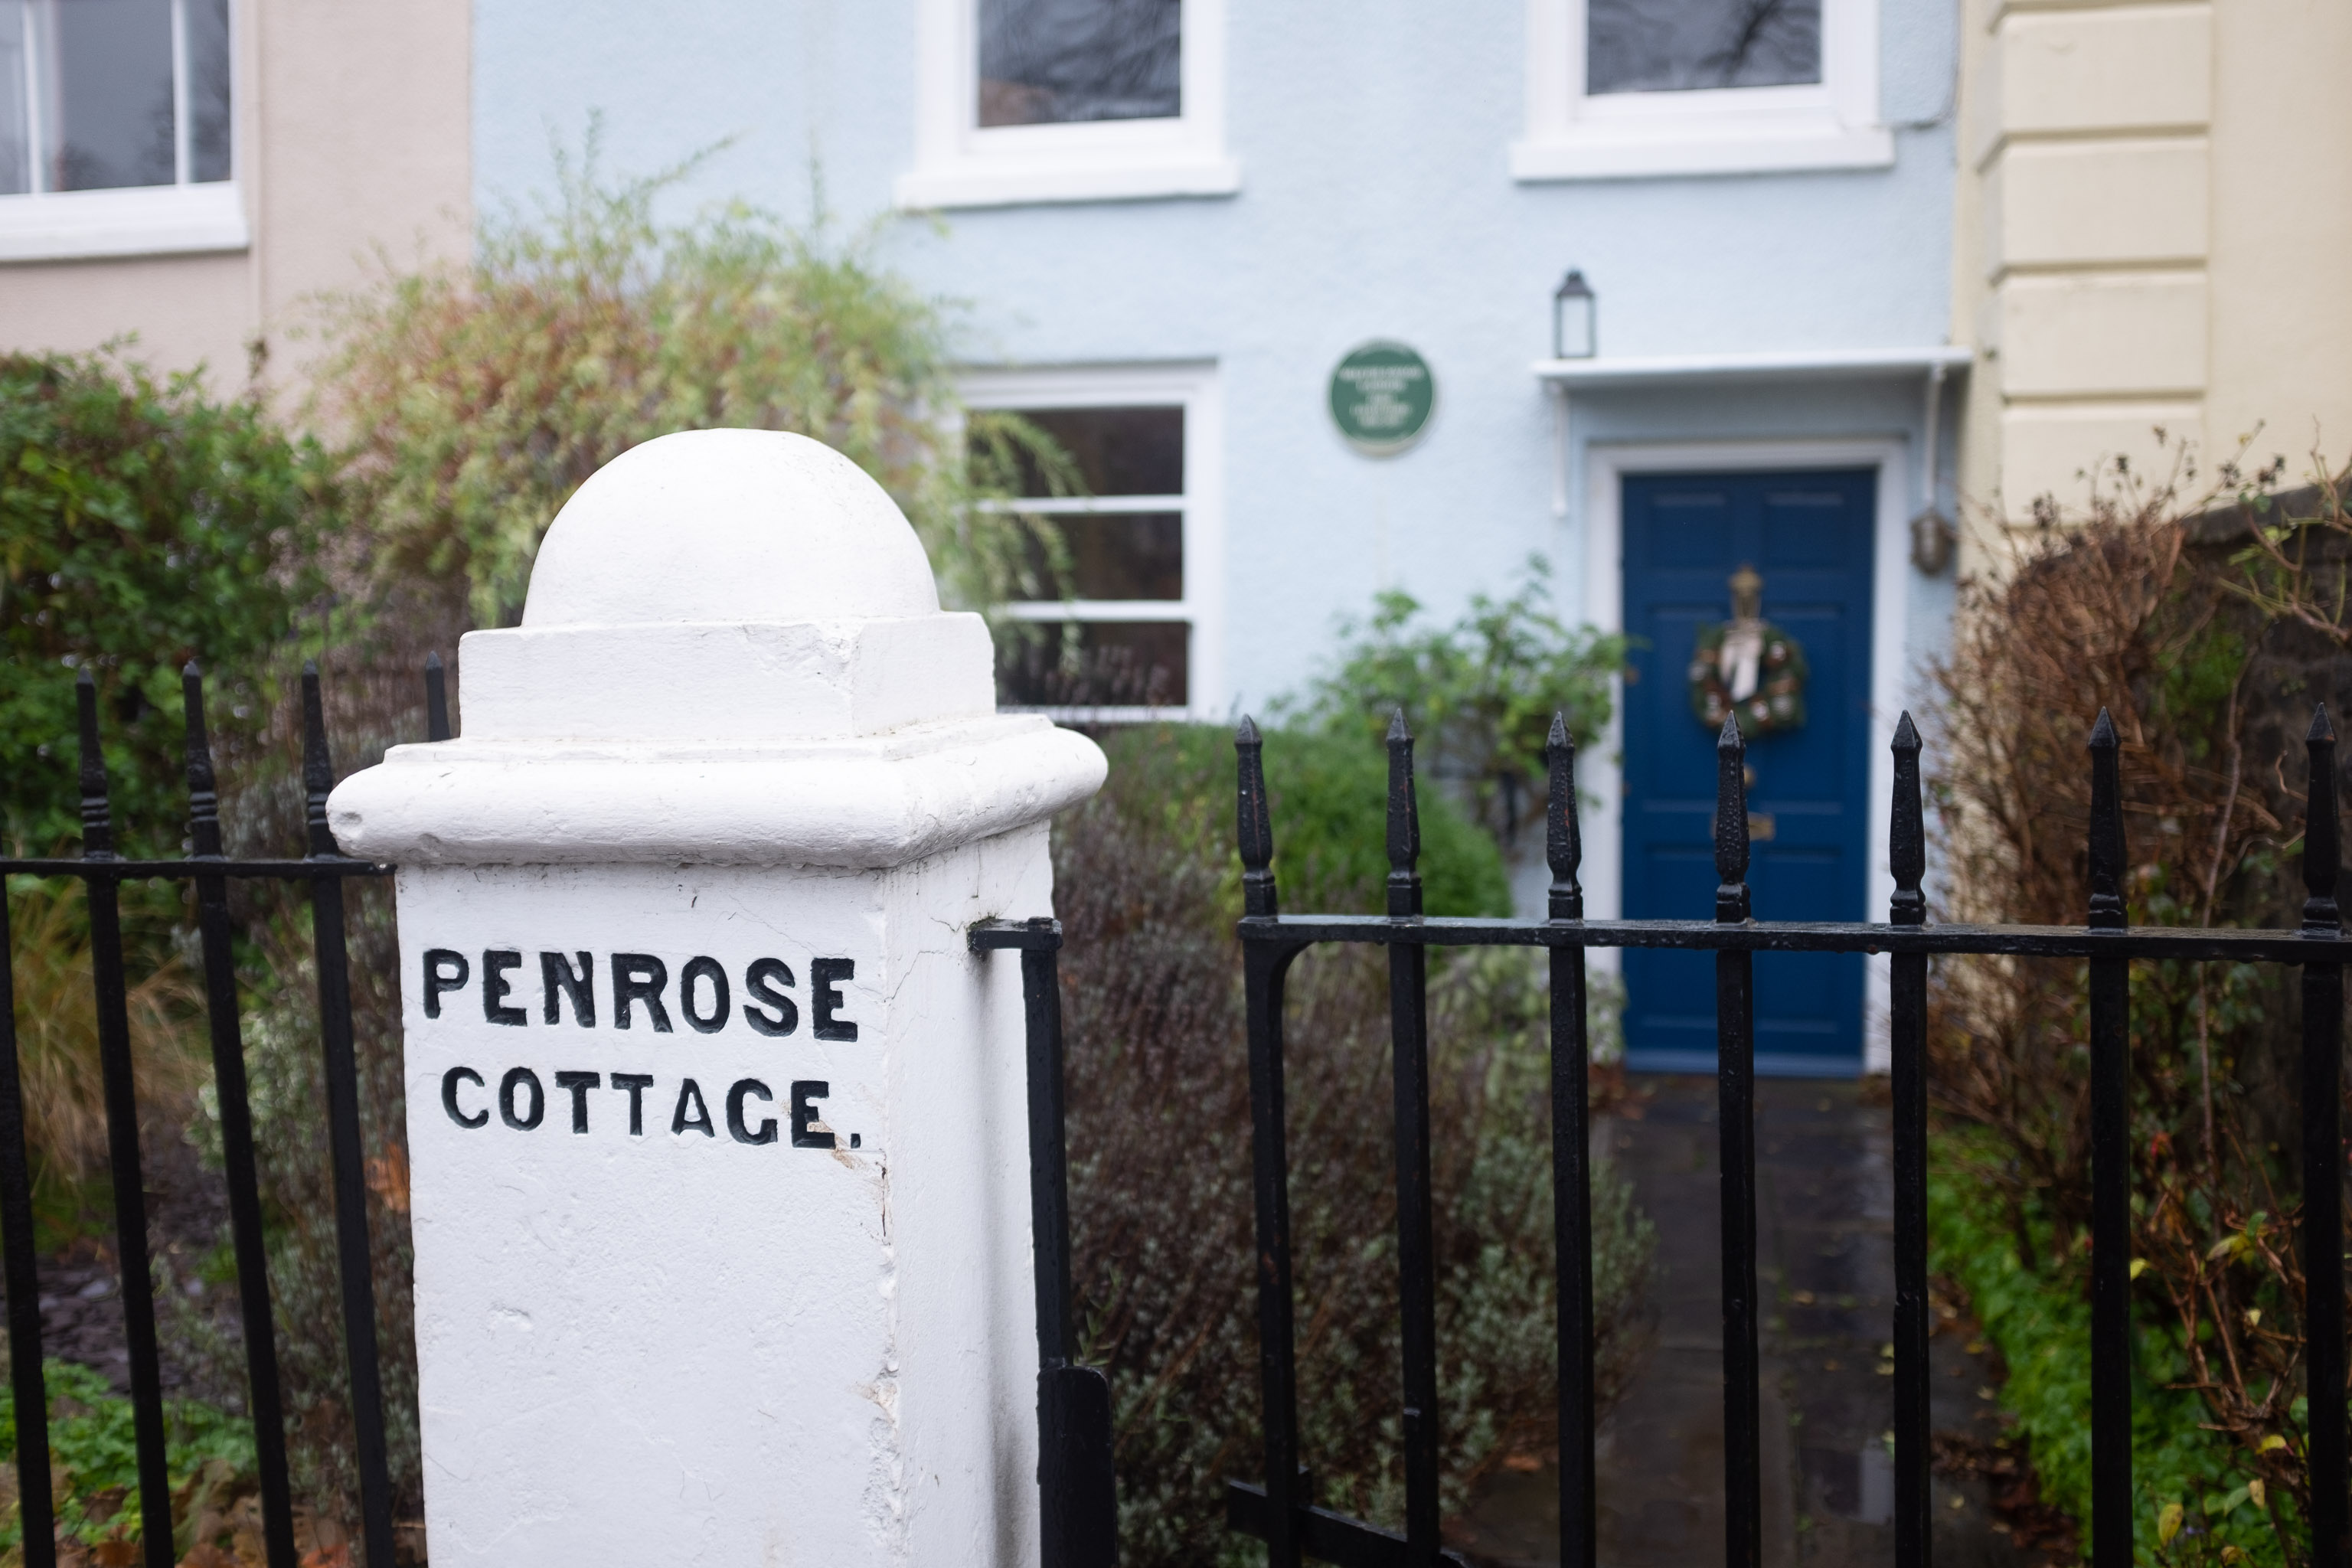 Penrose Cottage
